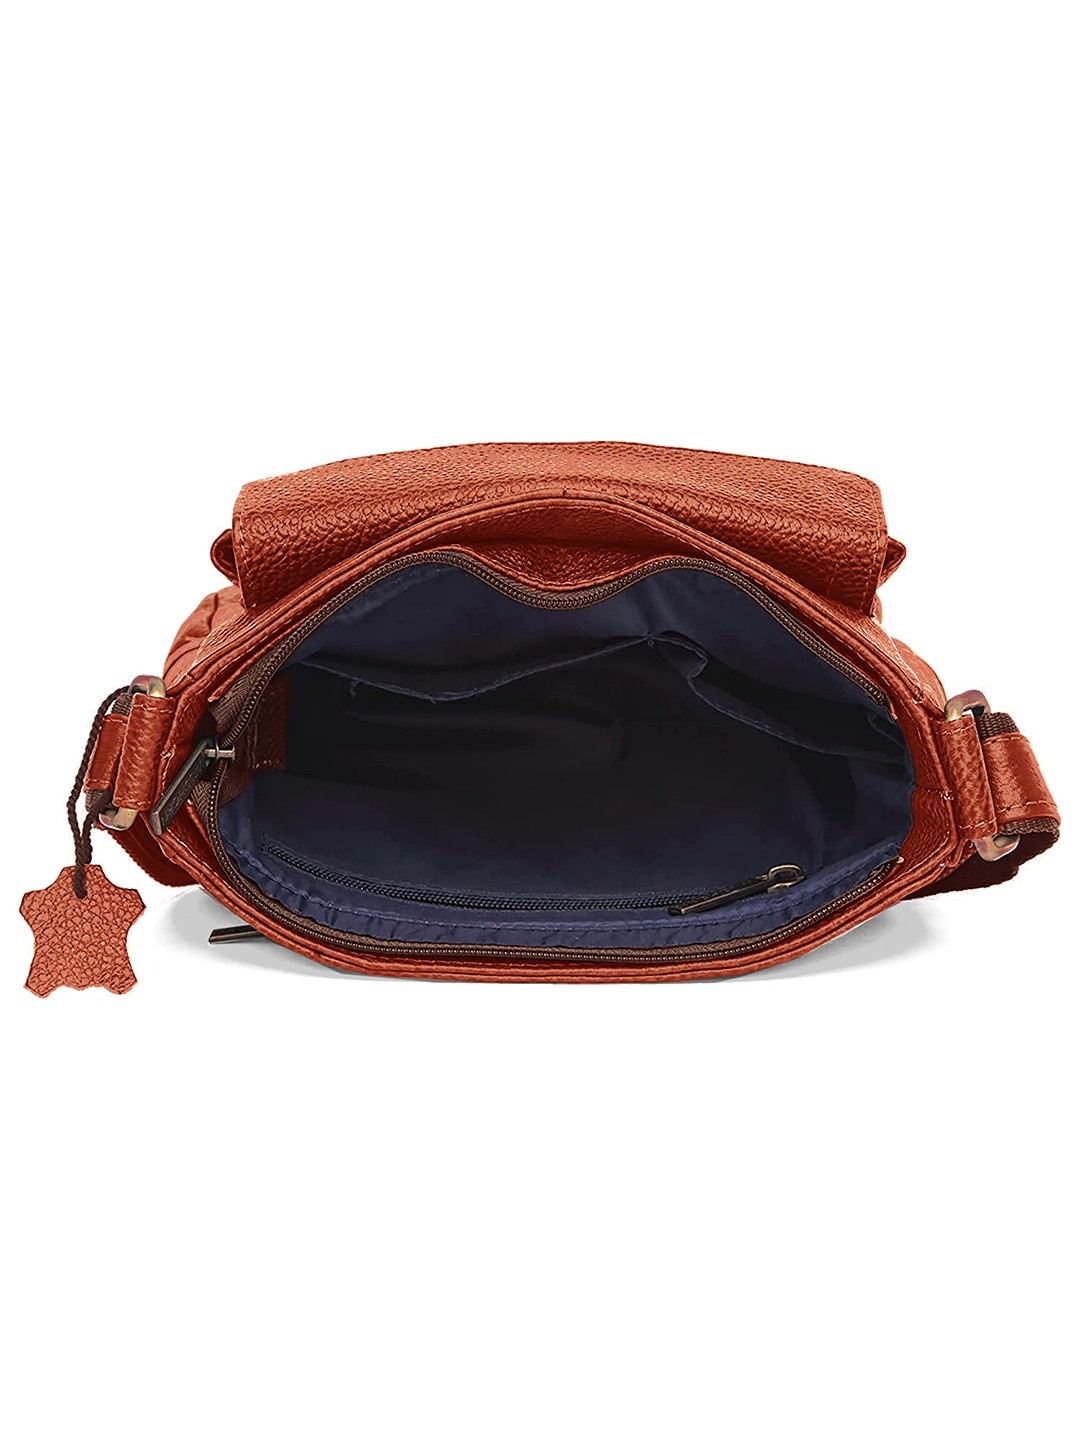 WildHorn | WildHorn Tan Classic Leather Adjustable Strap Sling Bag for Men  3